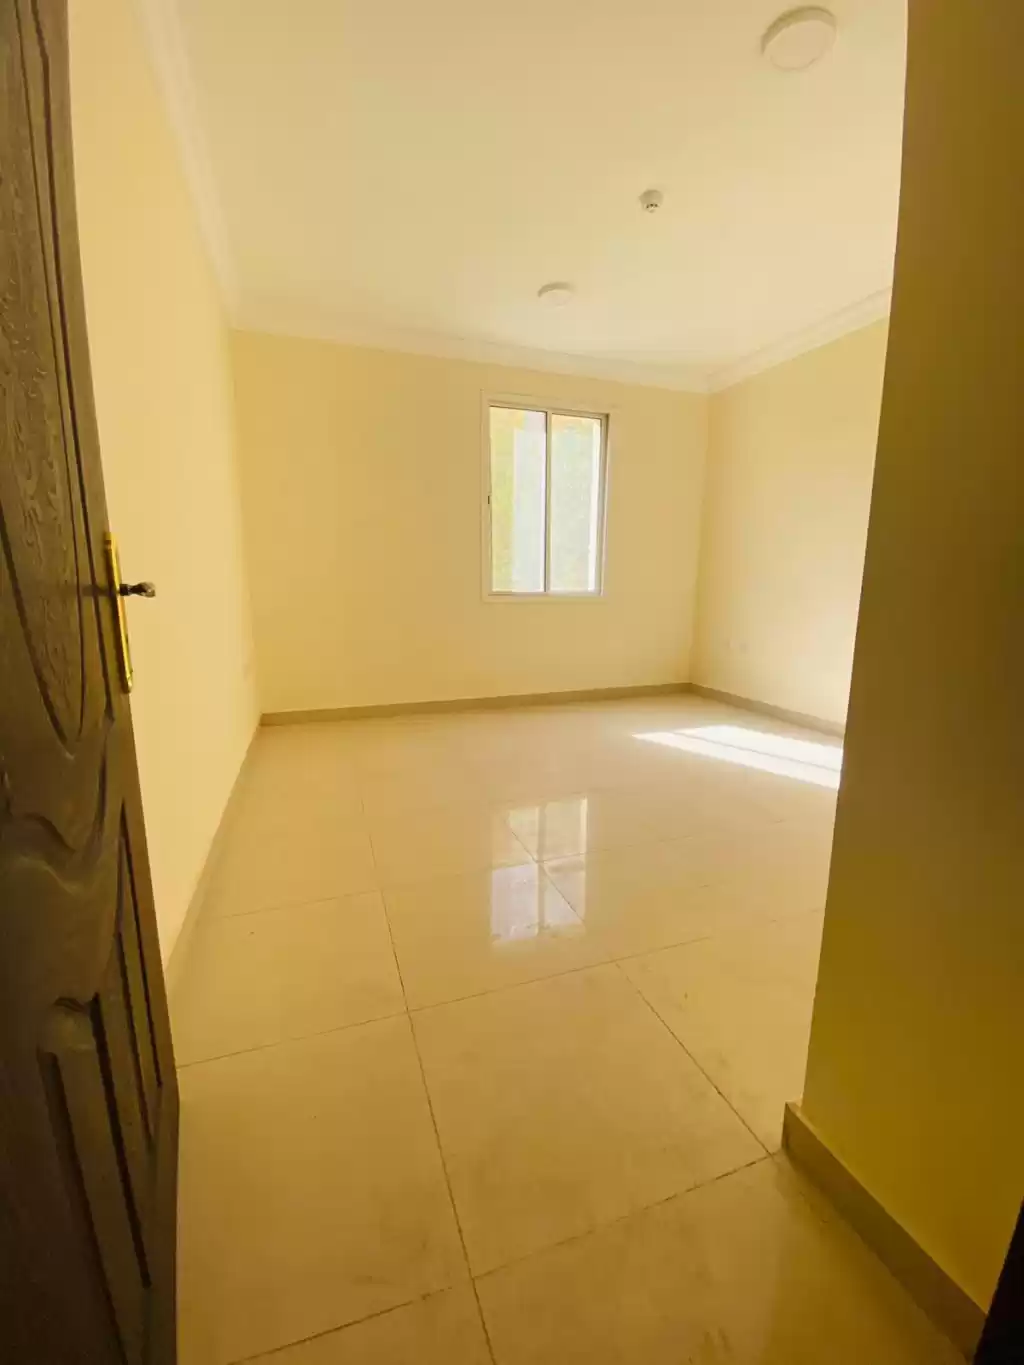 Résidentiel Propriété prête 2 chambres U / f Appartement  a louer au Al-Sadd , Doha #14138 - 1  image 